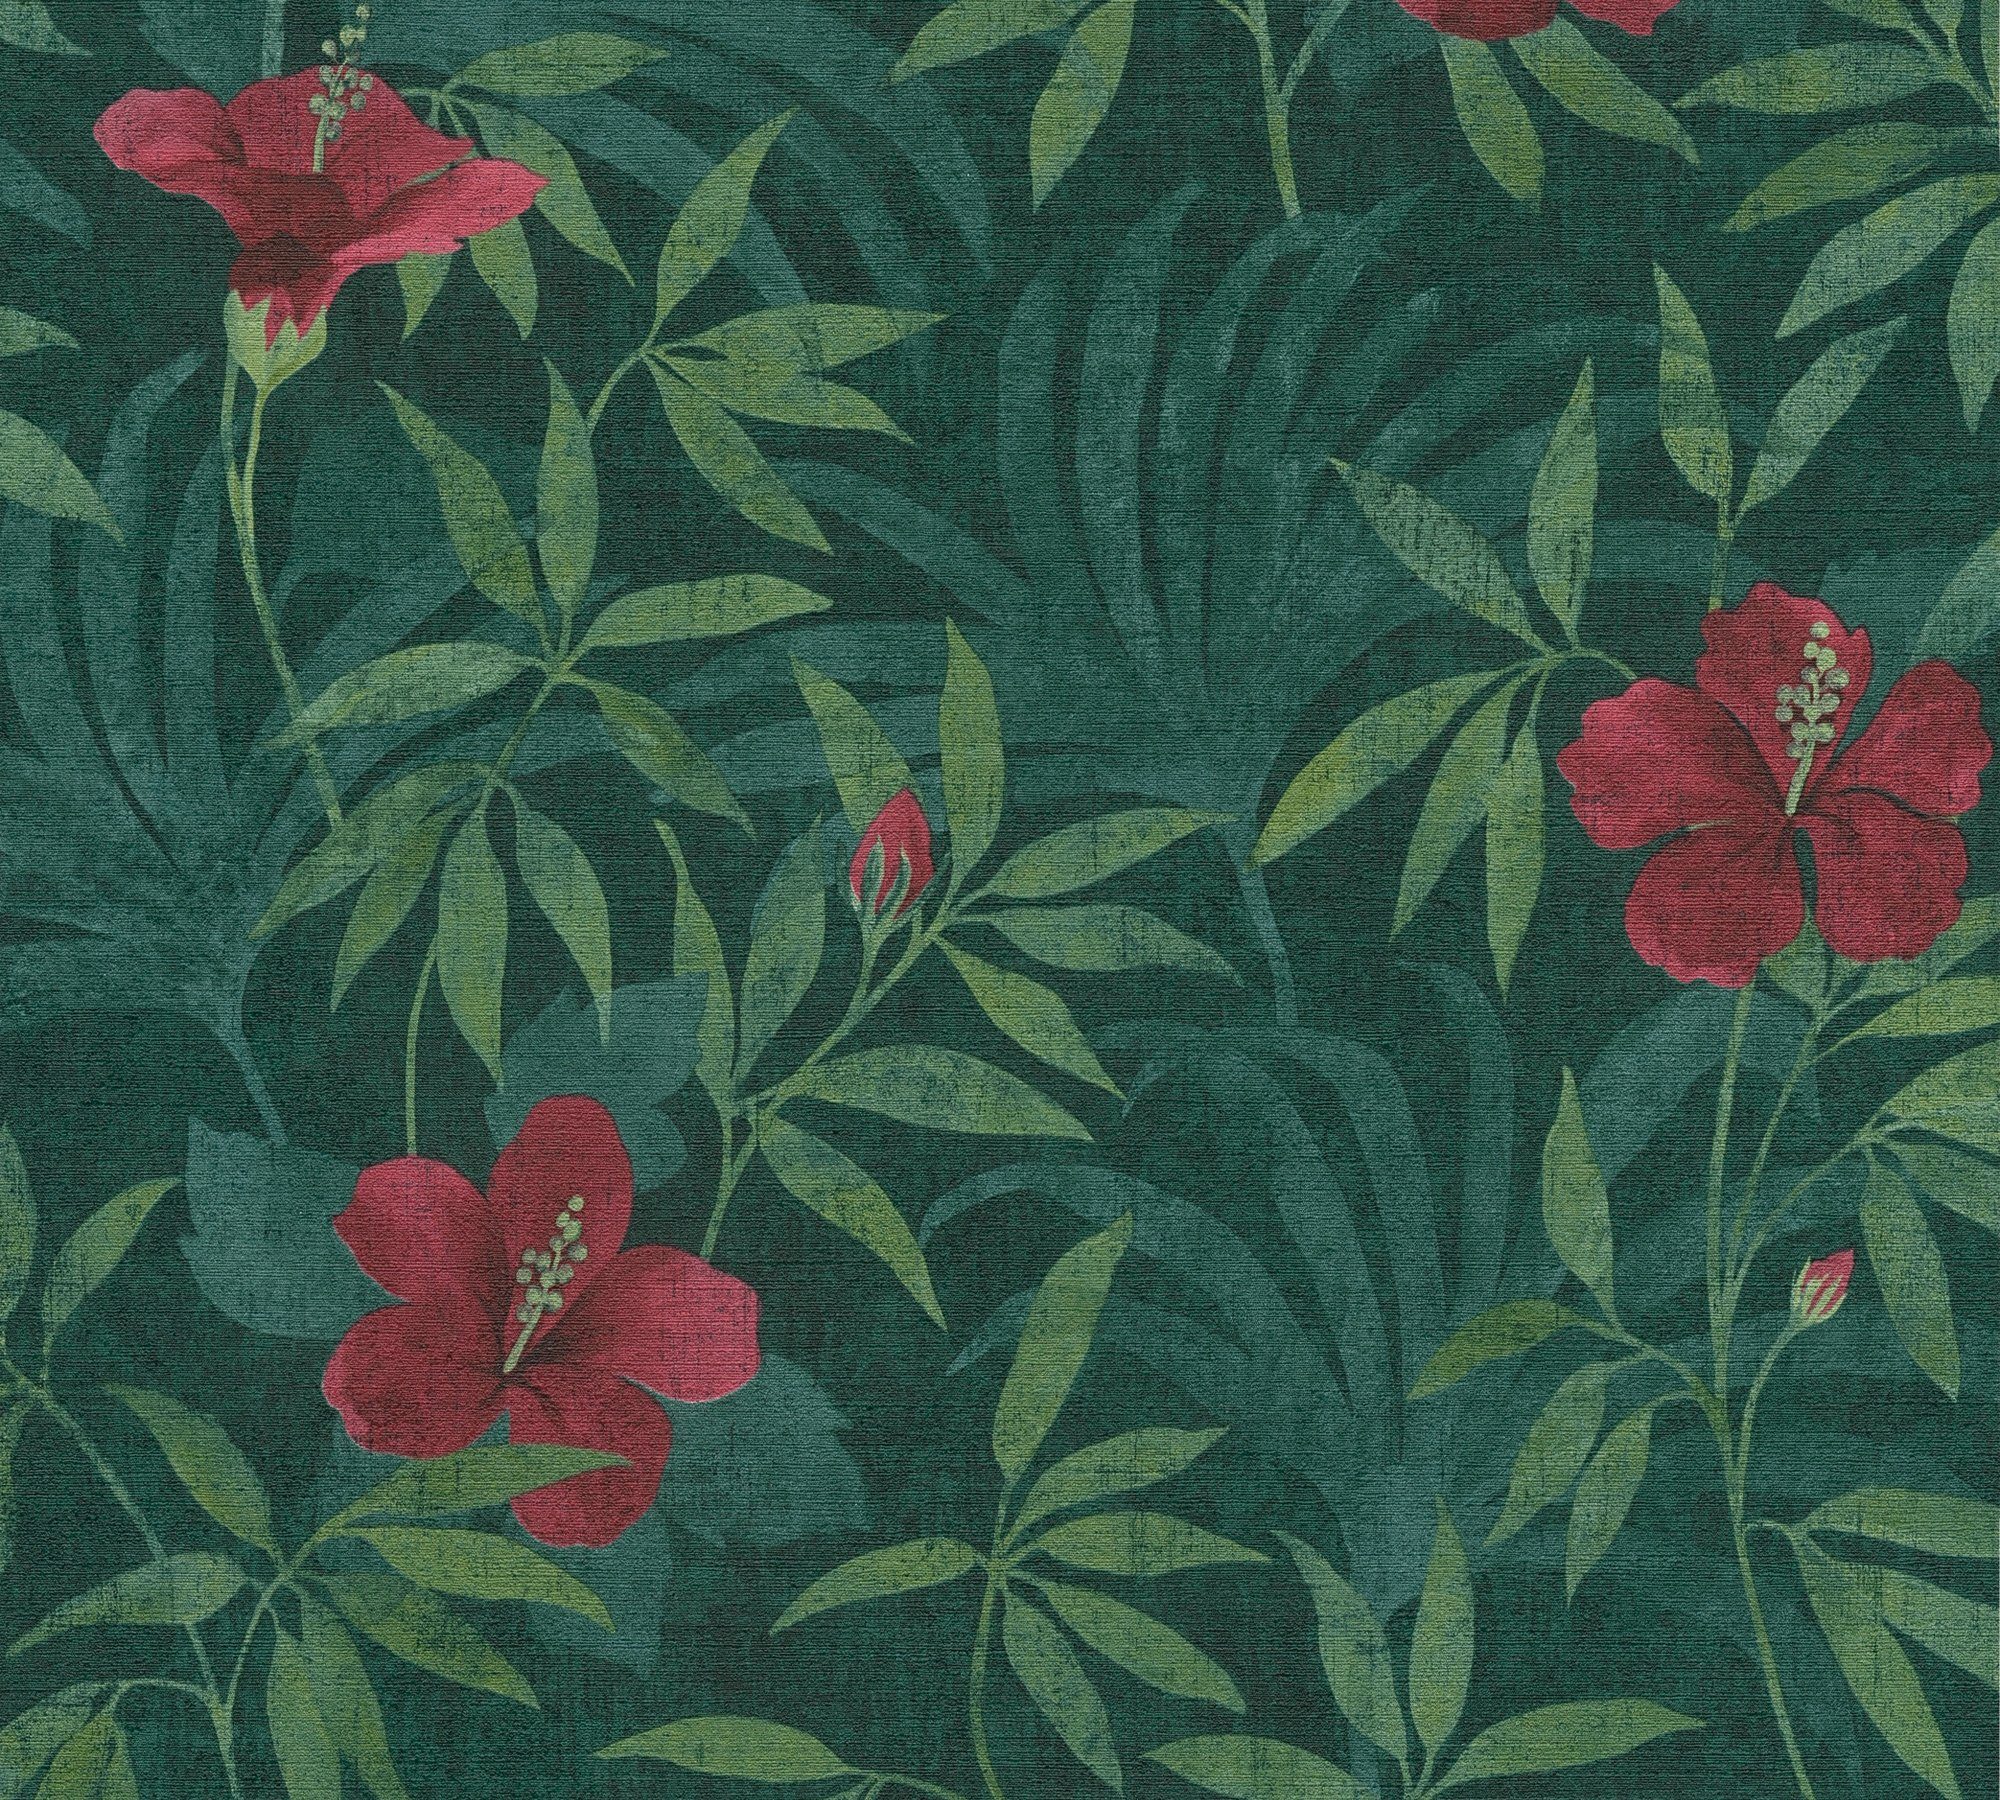 botanisch, Tapete Cuba, Vliestapete Blumen Création grün/rot A.S. floral, Dschungeltapete tropisch,